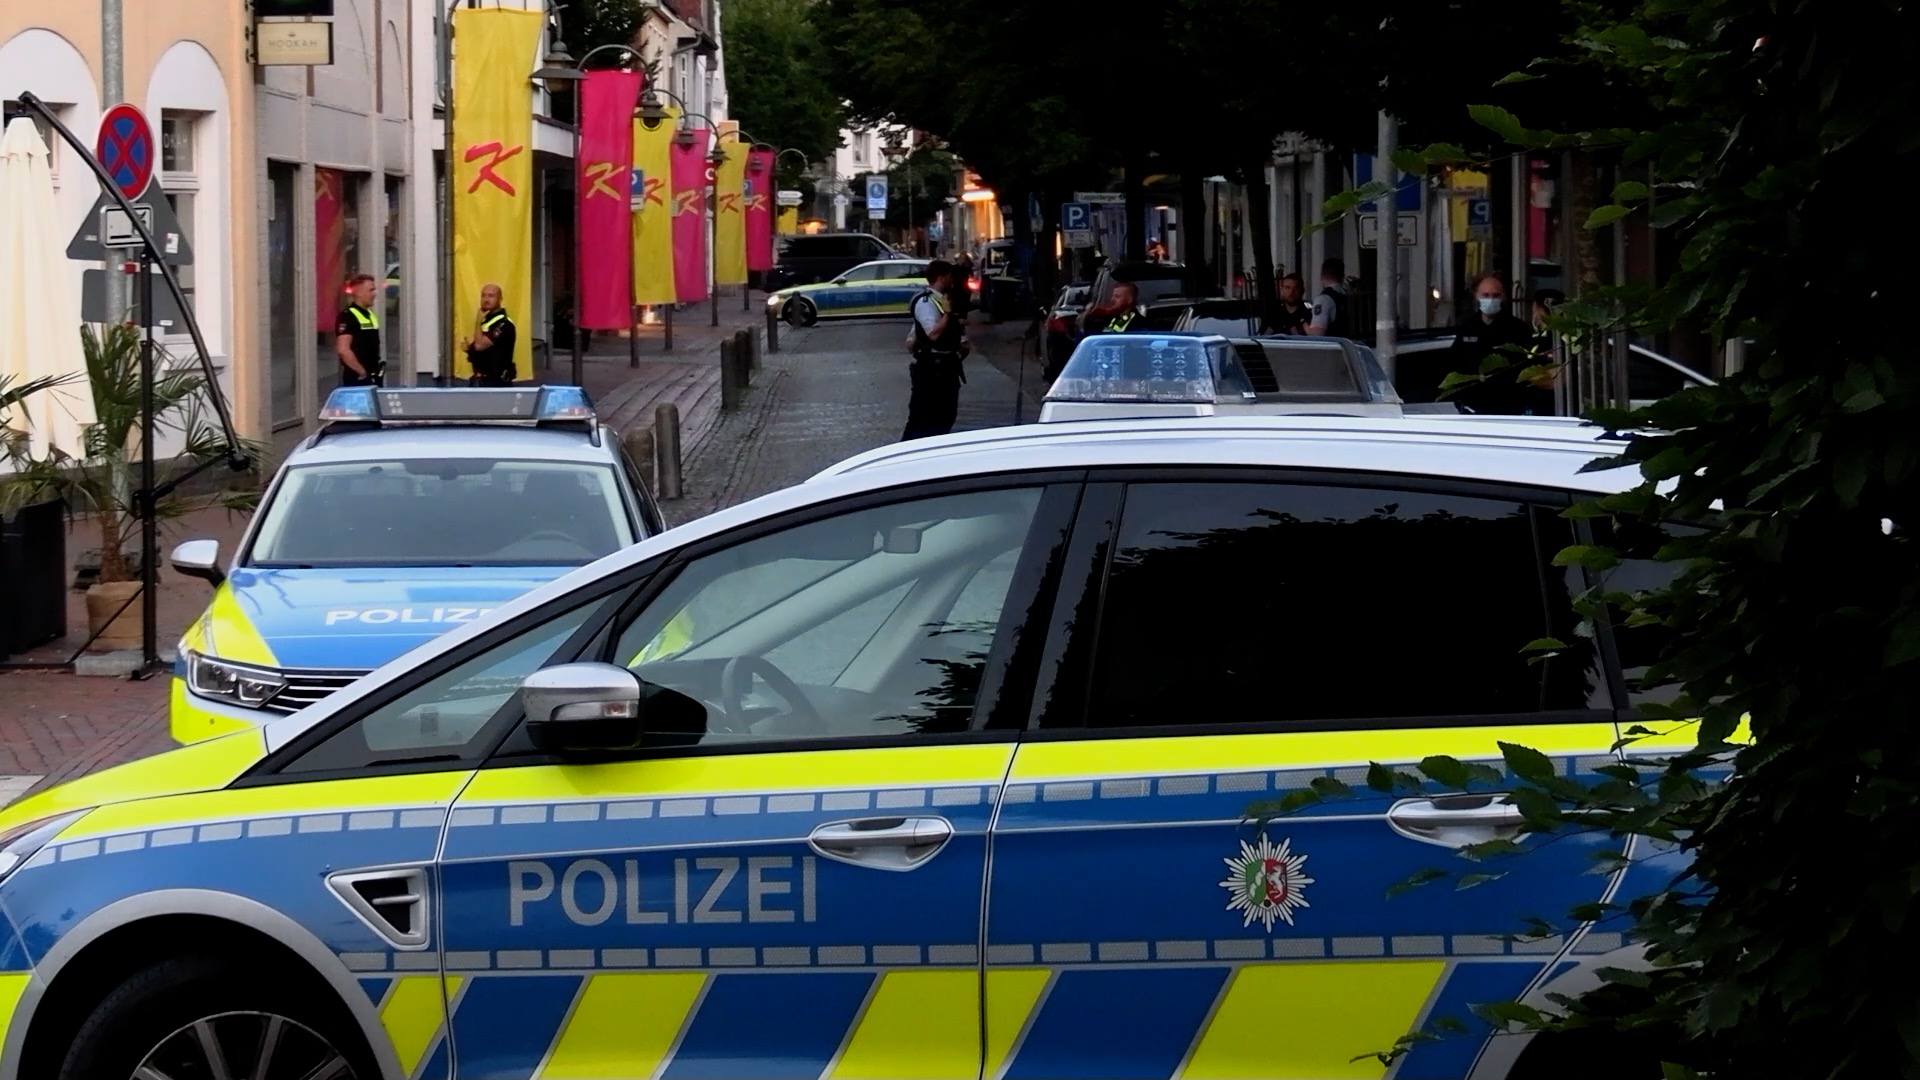 21-06-29-Diepholz-Polizeieinsatz-